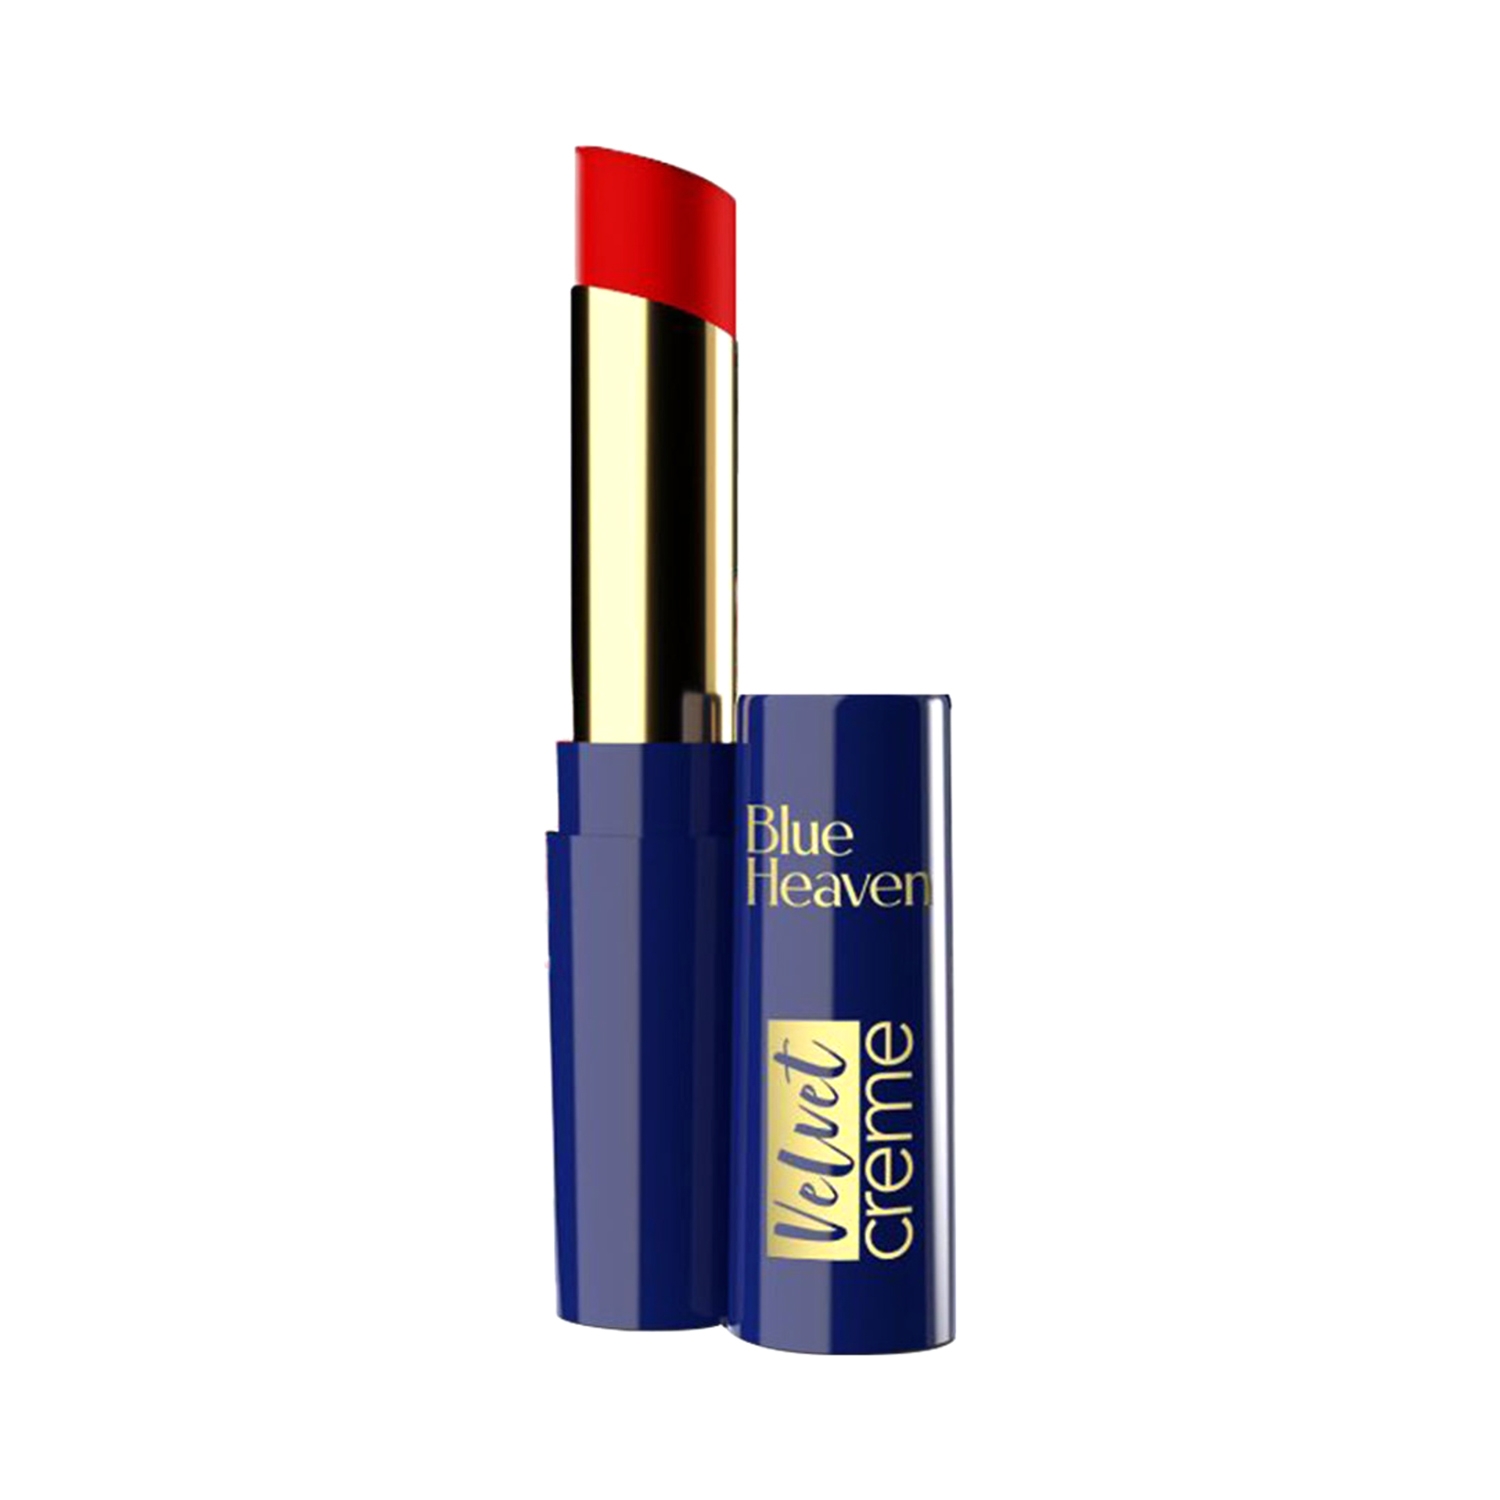 Blue Heaven | Blue Heaven Velvet Creme Lipstick - Dramatic Red (3.5g)